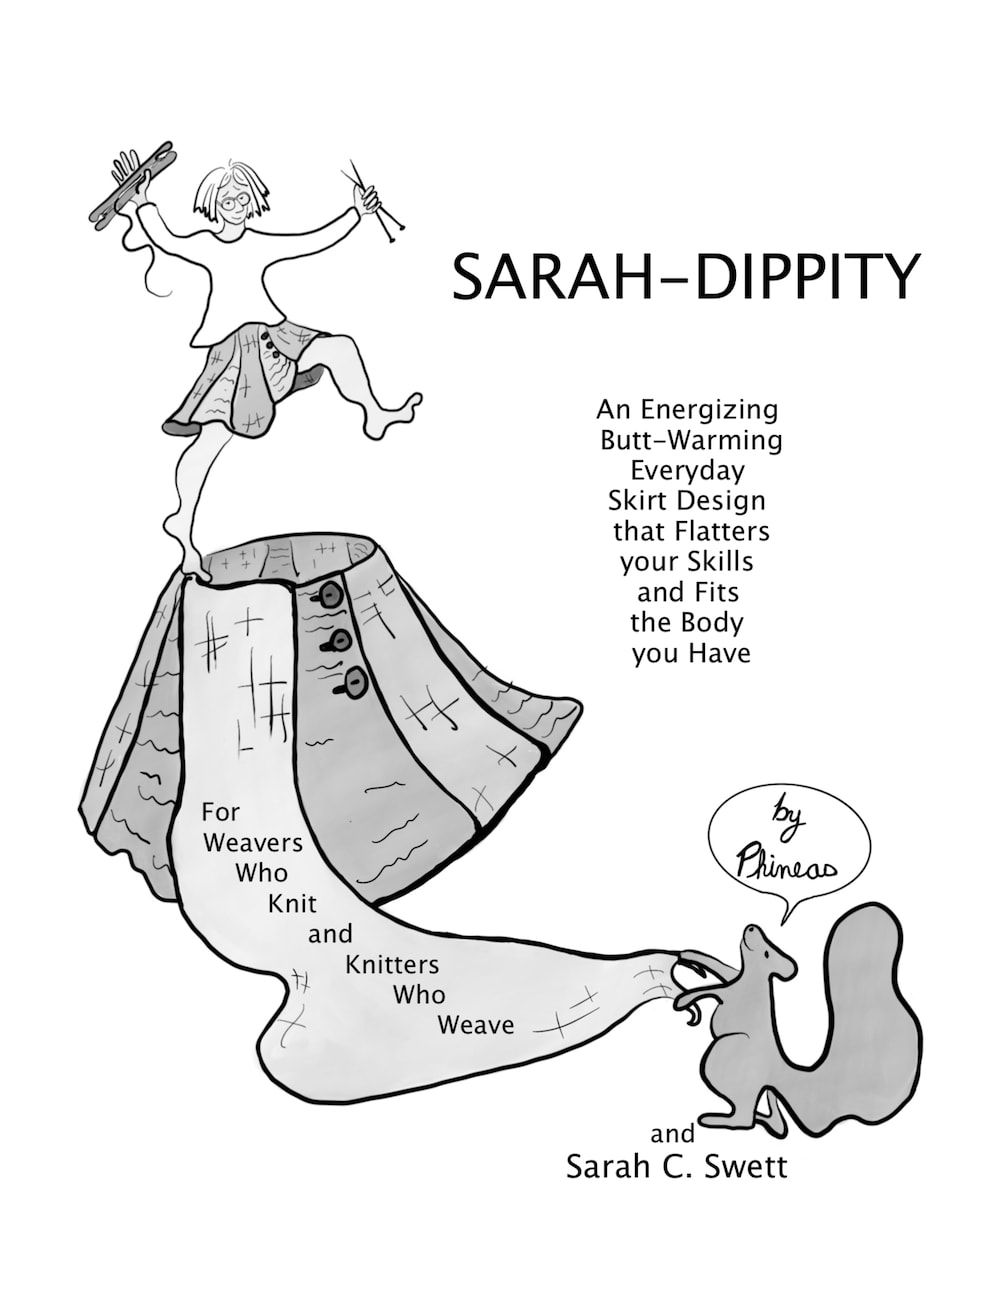 Sarah dippity